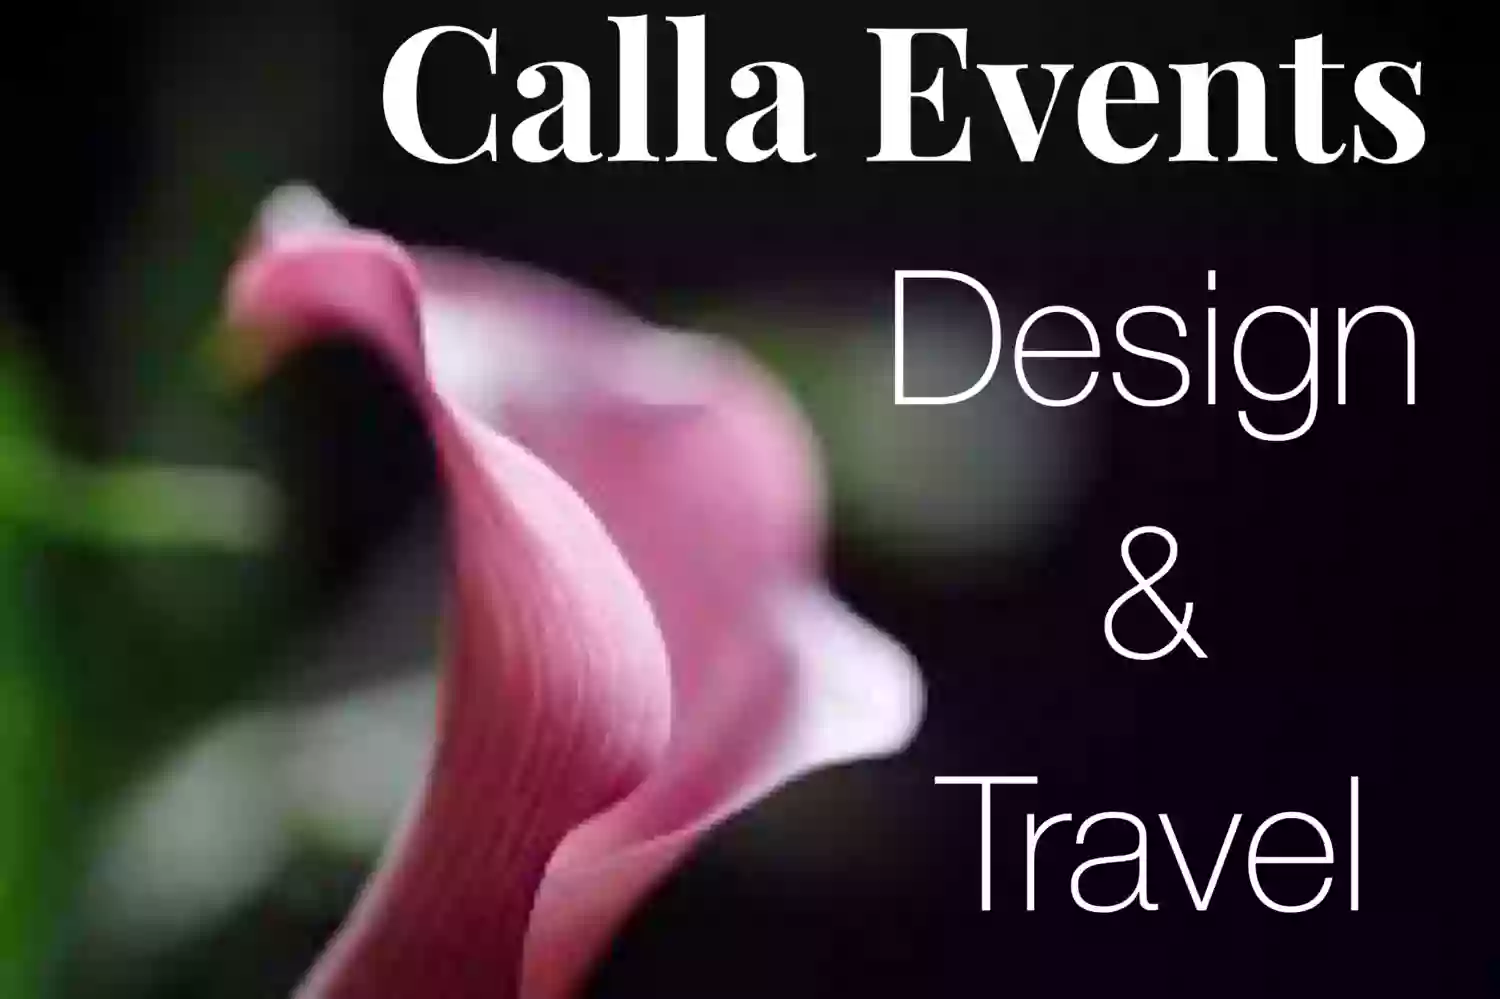 Calla Events, Design & Travel